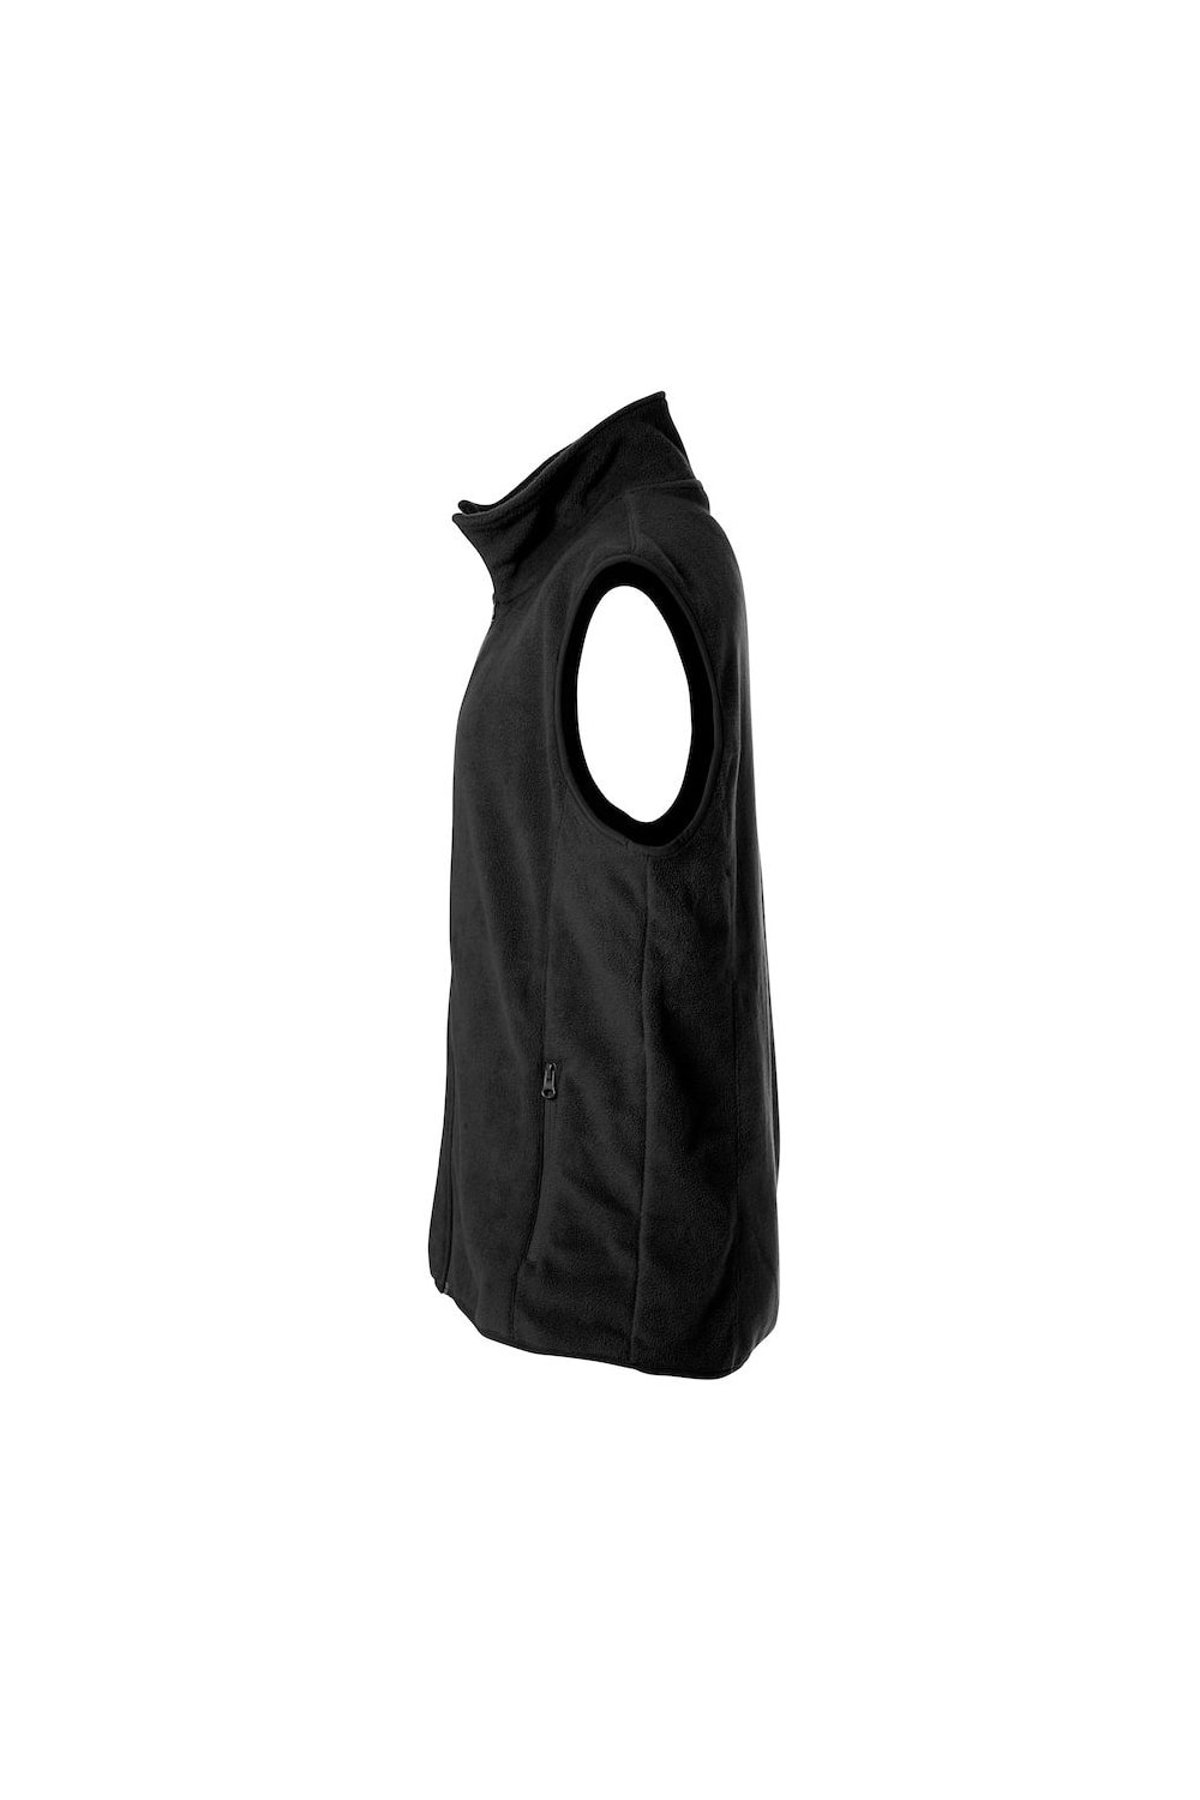 Fordeling Vægt Forbigående Clique Black Unisex Adult Basic Polar Fleece Tank Top (Black) | Verishop